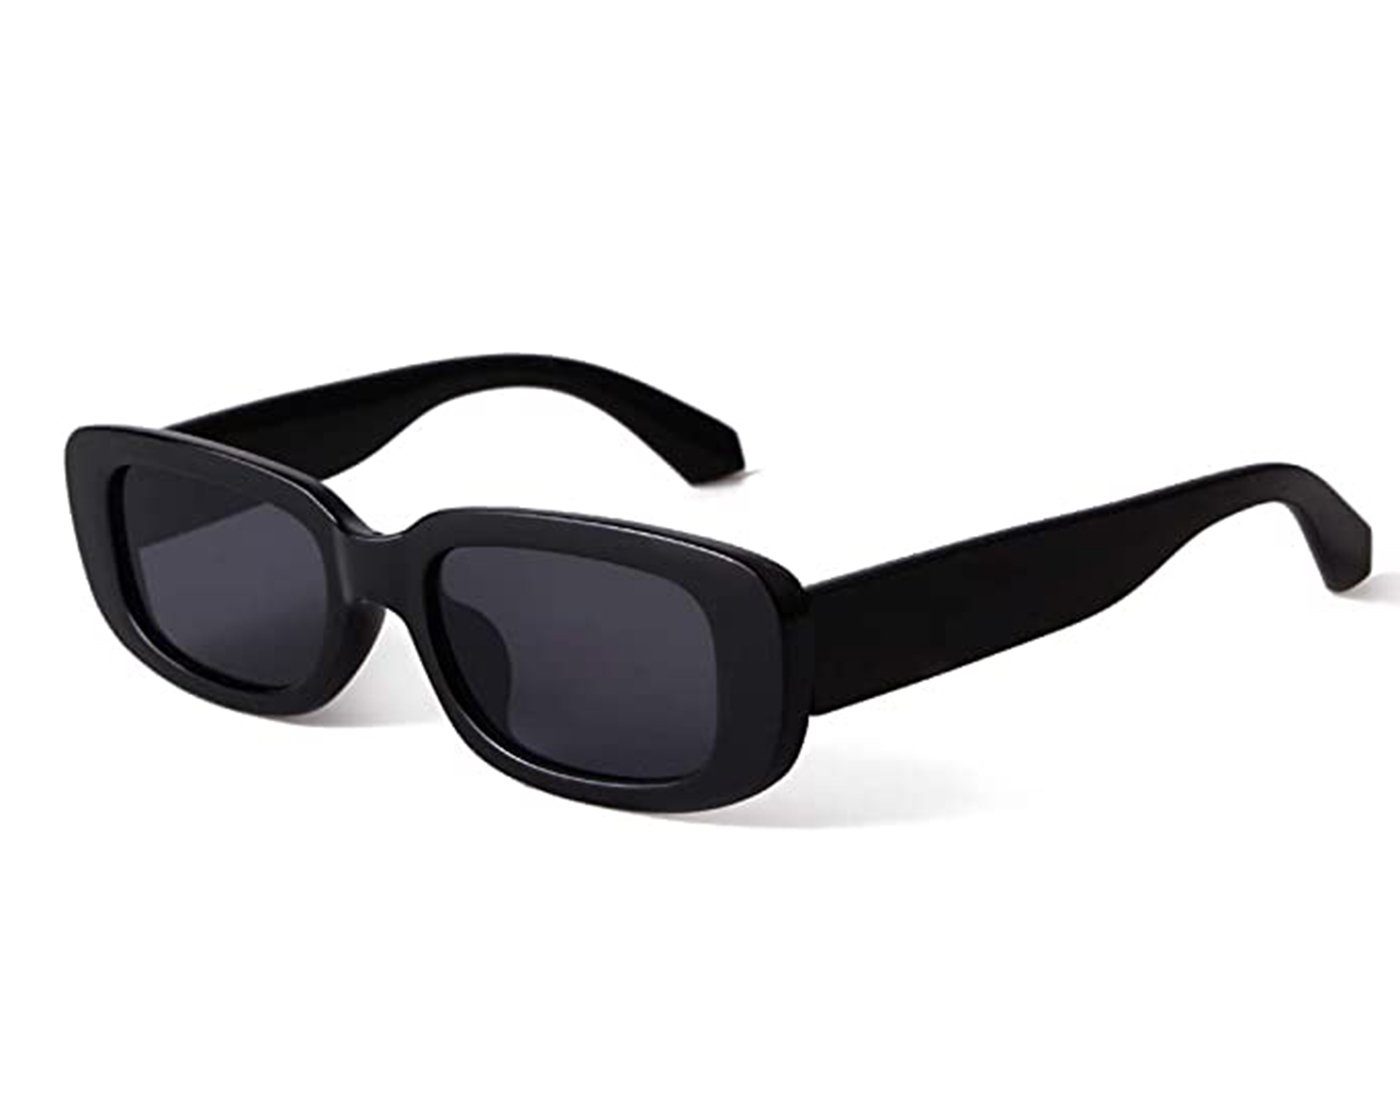 Haiaveng Sonnenbrille Vintage rechteckige Sonnenbrille für Damen und Herren Modische Retro-Brille mit quadratischem Rahmen black